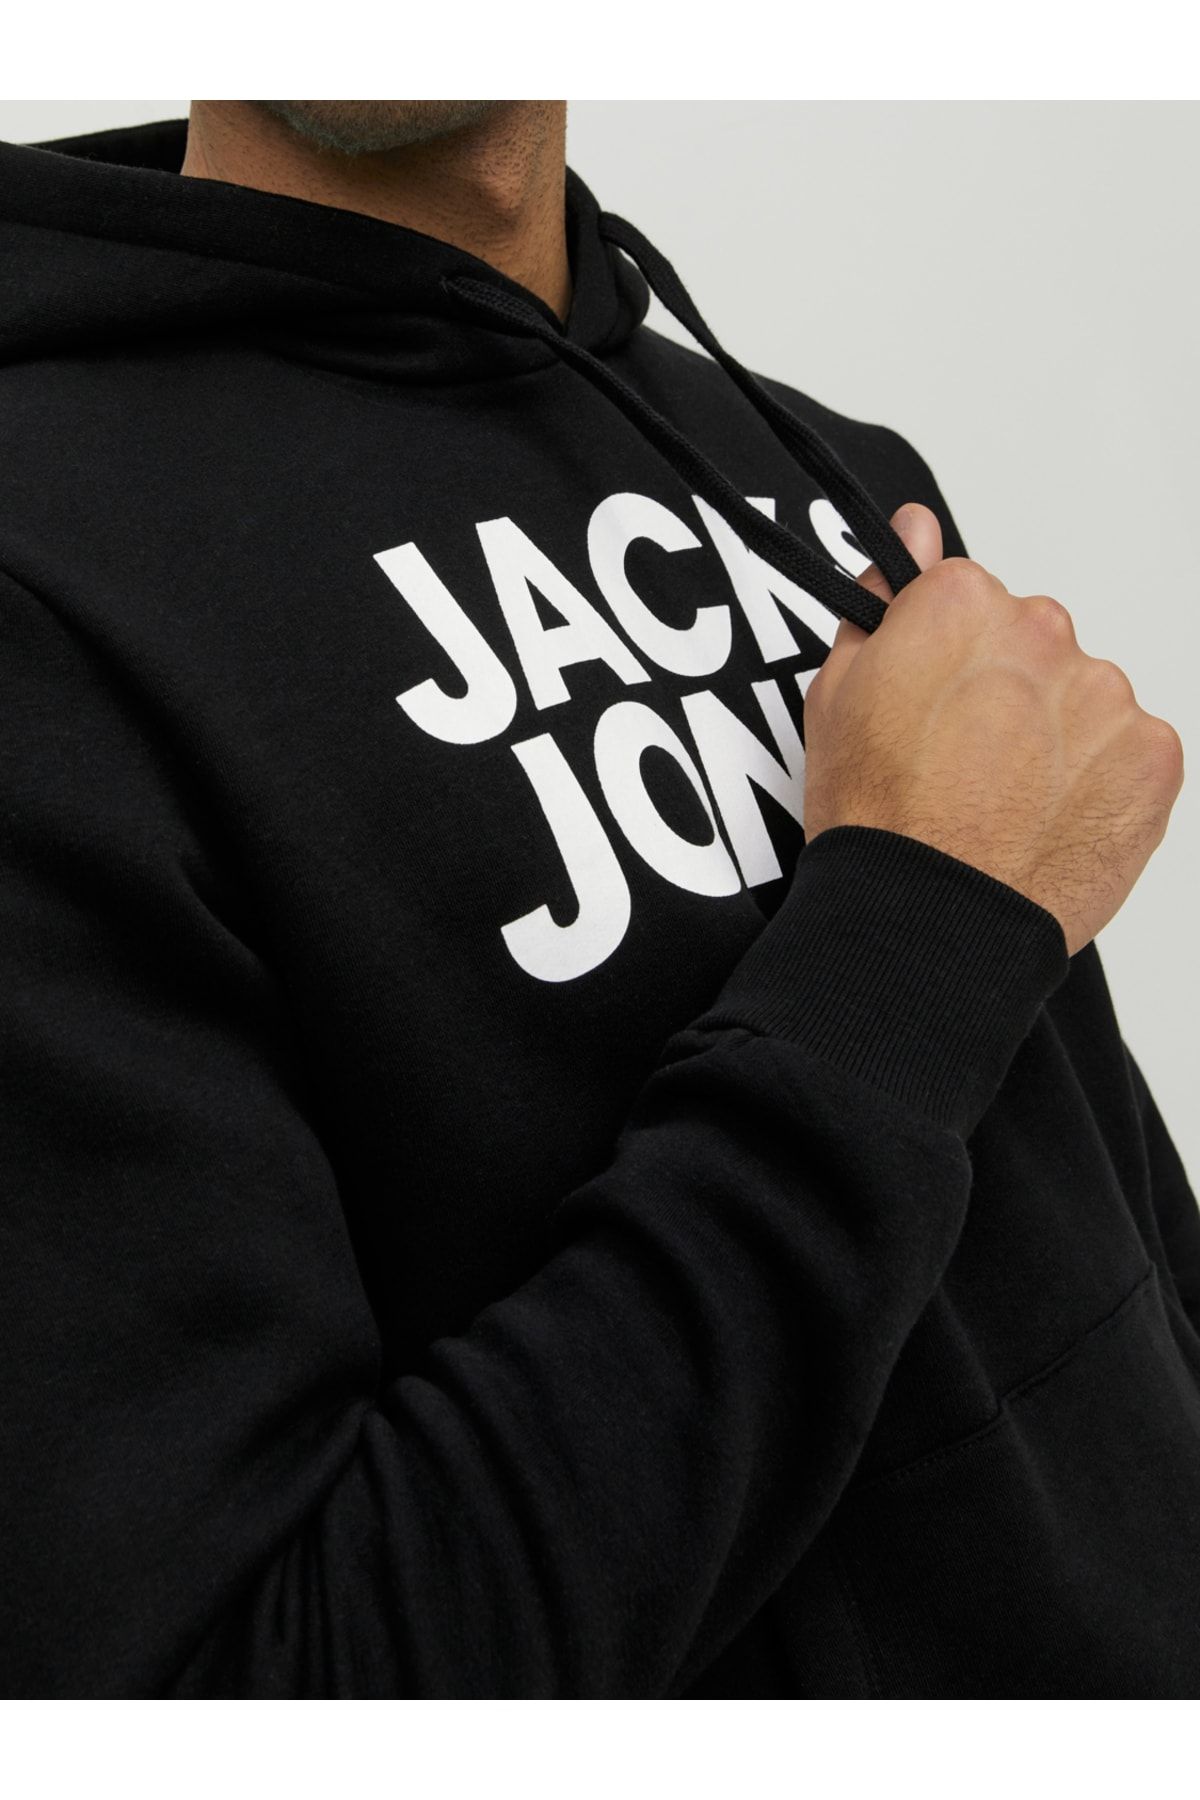 Jack & Jones 12152840 Corp Logo Hood Awsweatshirt - Trendyol